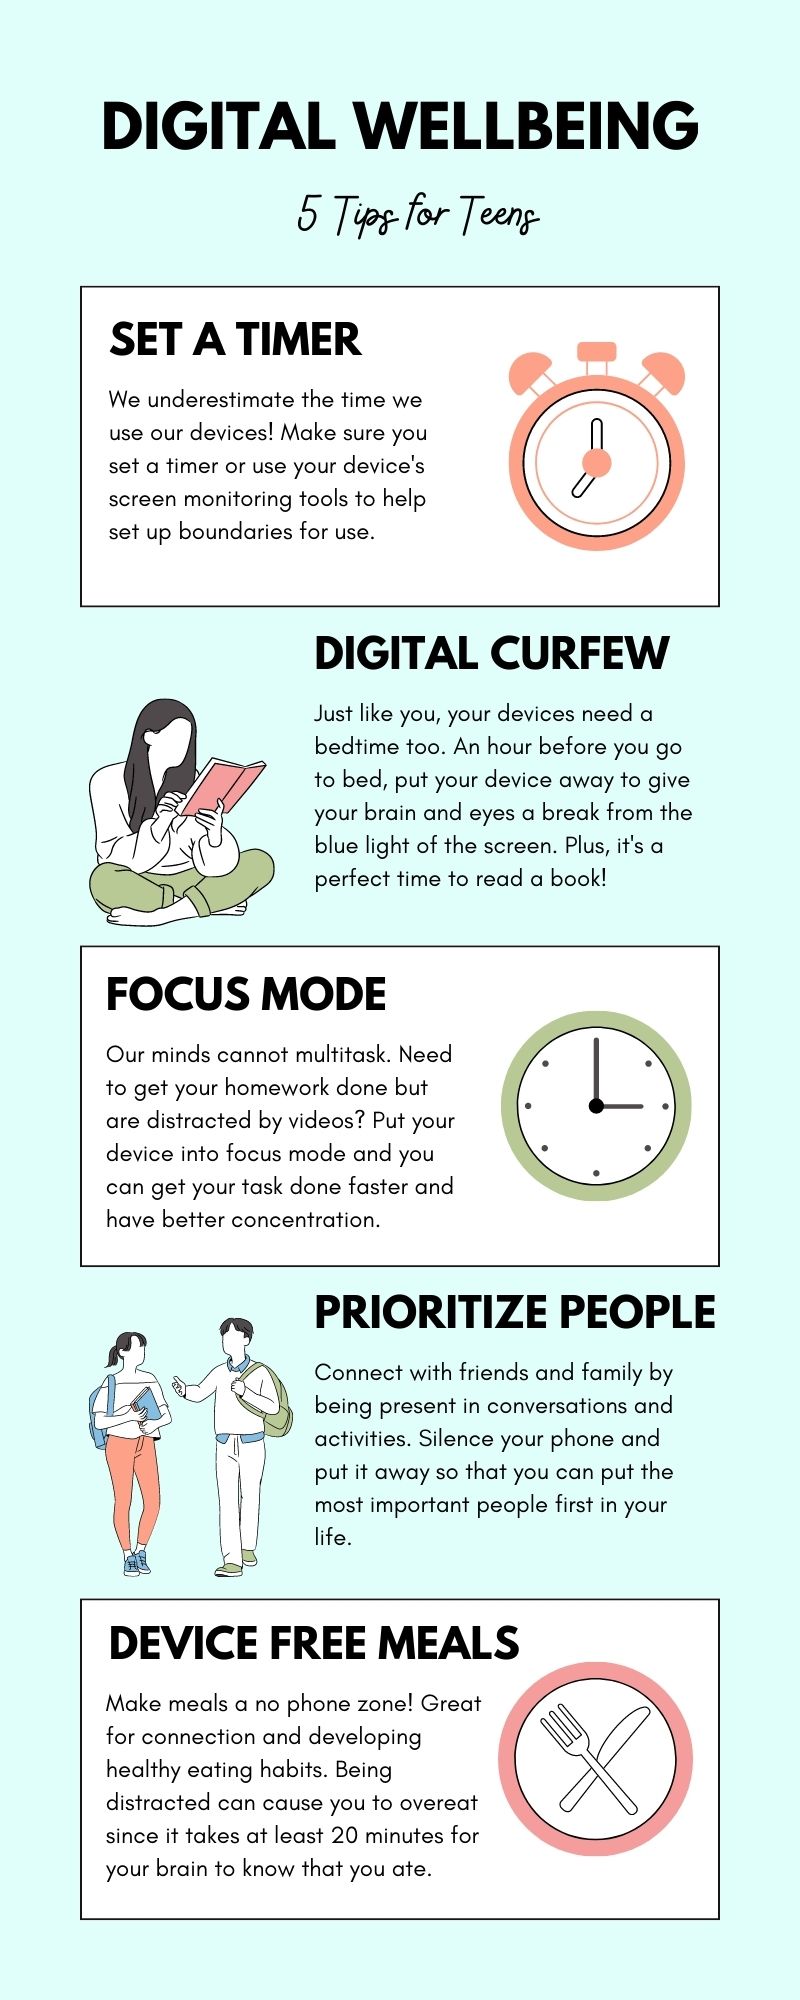 Digital wellbeing tips